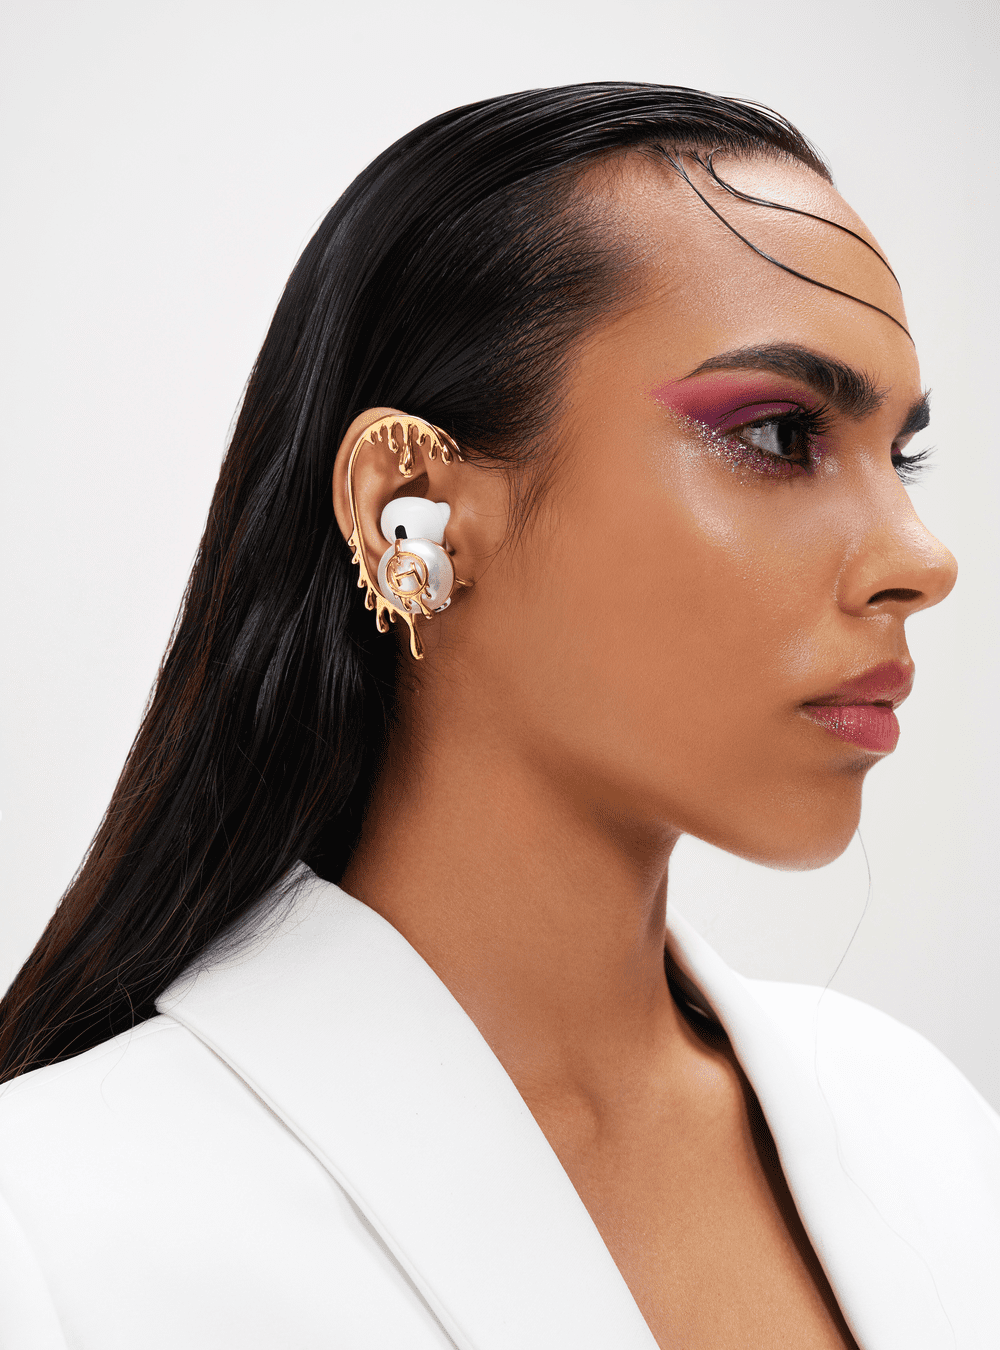 Aesthetic Ear Piercing Ideas  Ear cuff jewelry Ear cuff earings Full ear  earrings